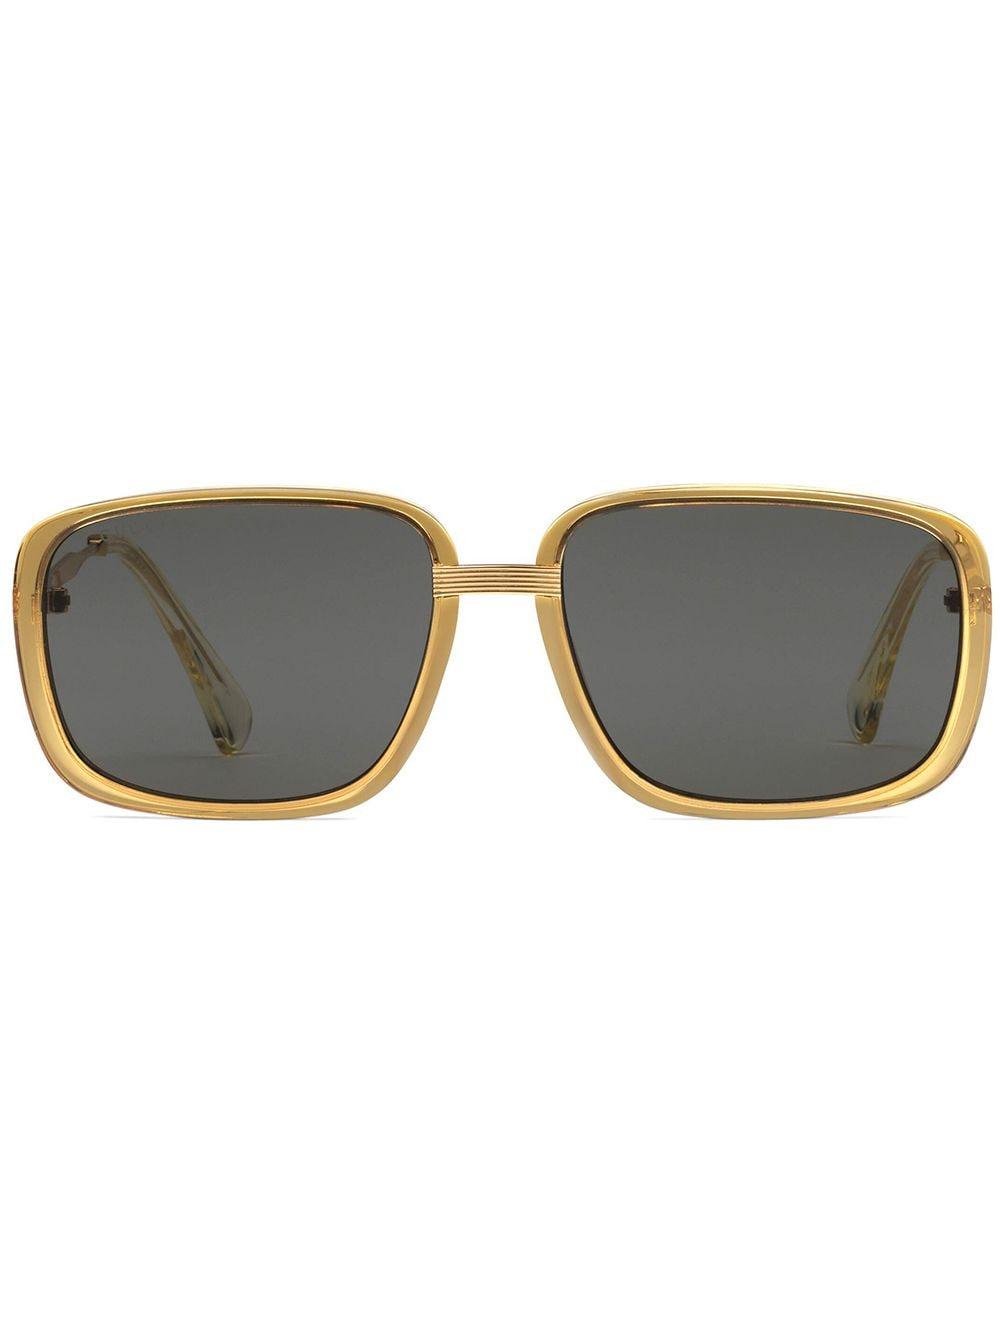 Gucci Rectangular-frame Sunglasses for Men - Lyst